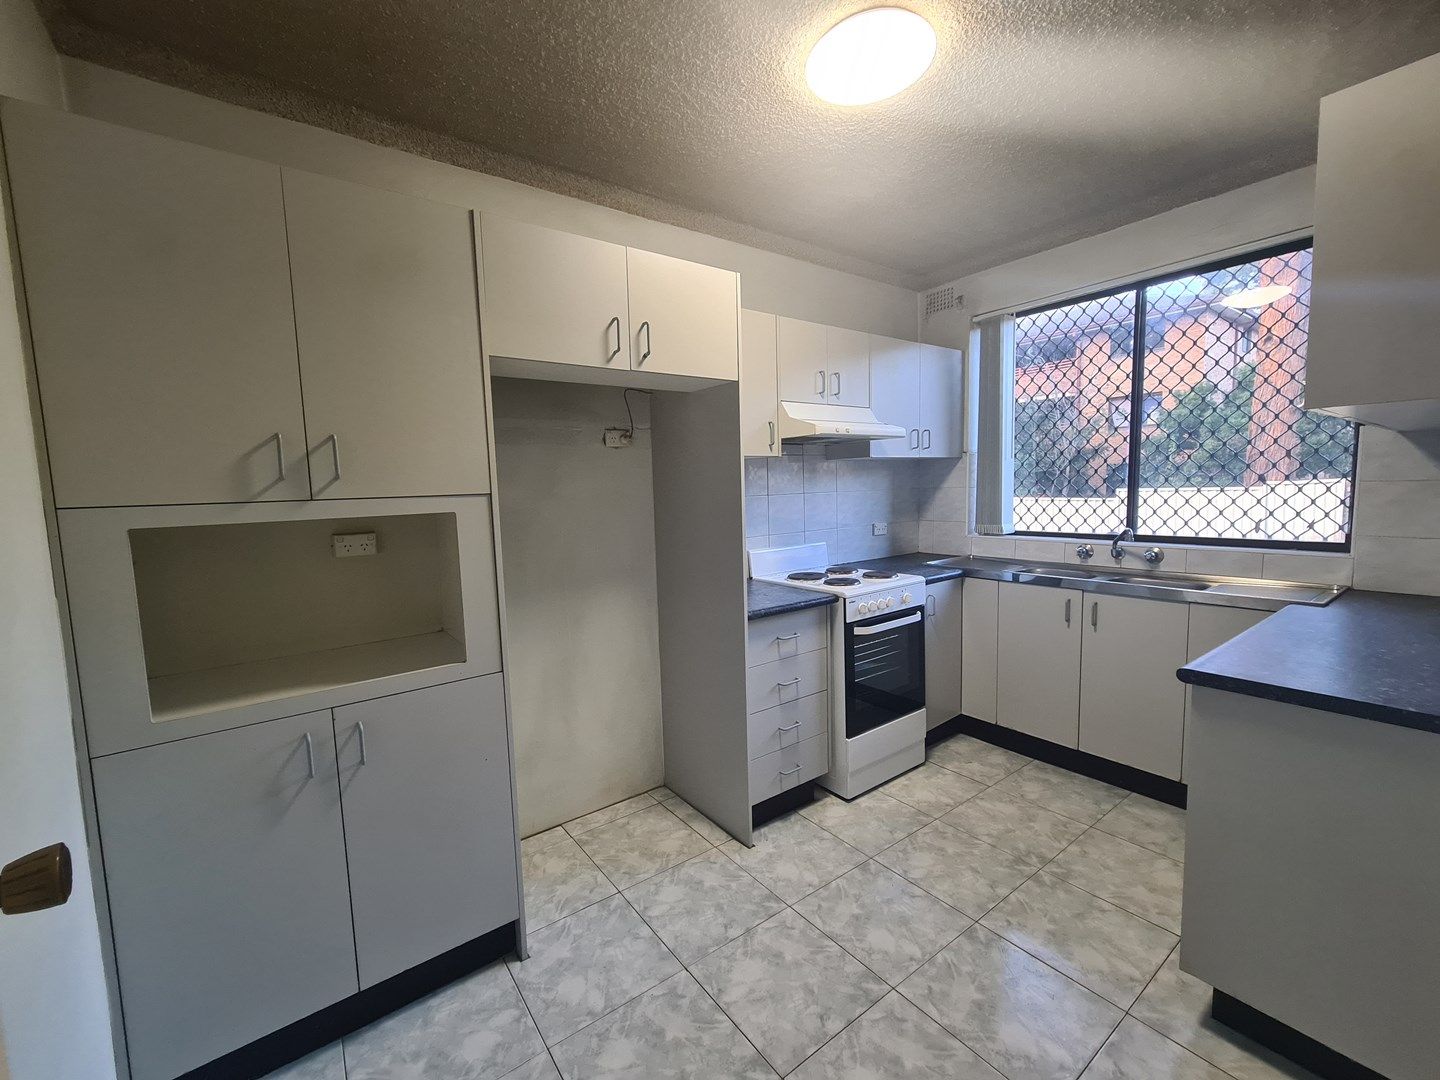 2 bedrooms Apartment / Unit / Flat in 6/4-6 Allen Street HARRIS PARK NSW, 2150